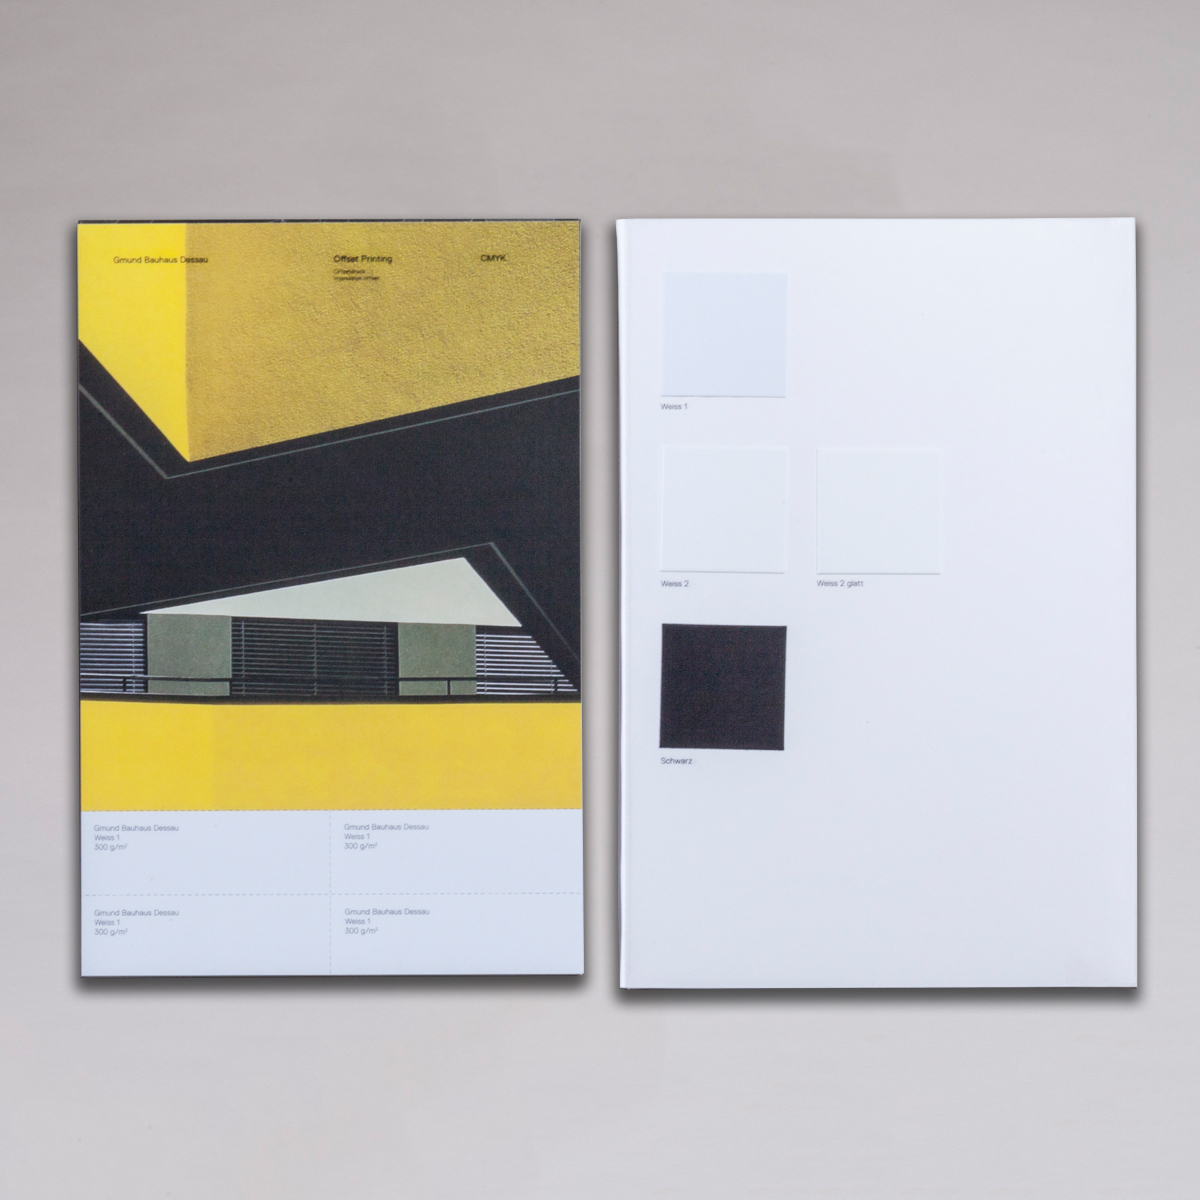 Gmund Bauhaus Dessau - Compendium